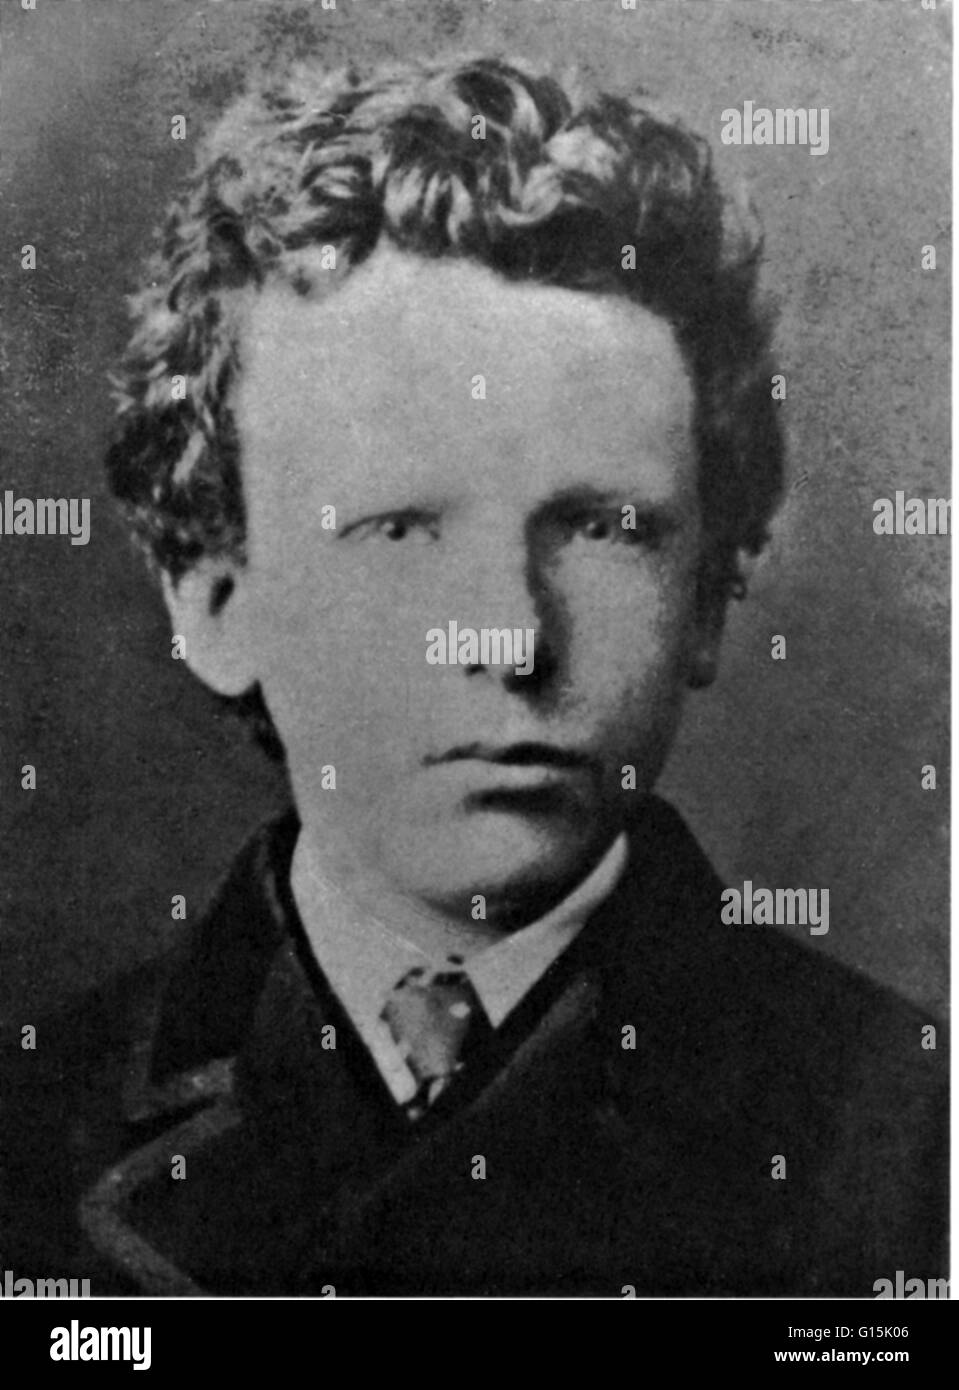 Photo de van Gogh prises lorsqu'il avait 13 ans. Vincent Willem van Gogh (30 mars 1853 - 29 juillet 1890) était un peintre post-impressionniste hollandais dont le travail, remarquable pour sa beauté brute, l'honnêteté, émotionnelle et bold color, avait une influenc Banque D'Images